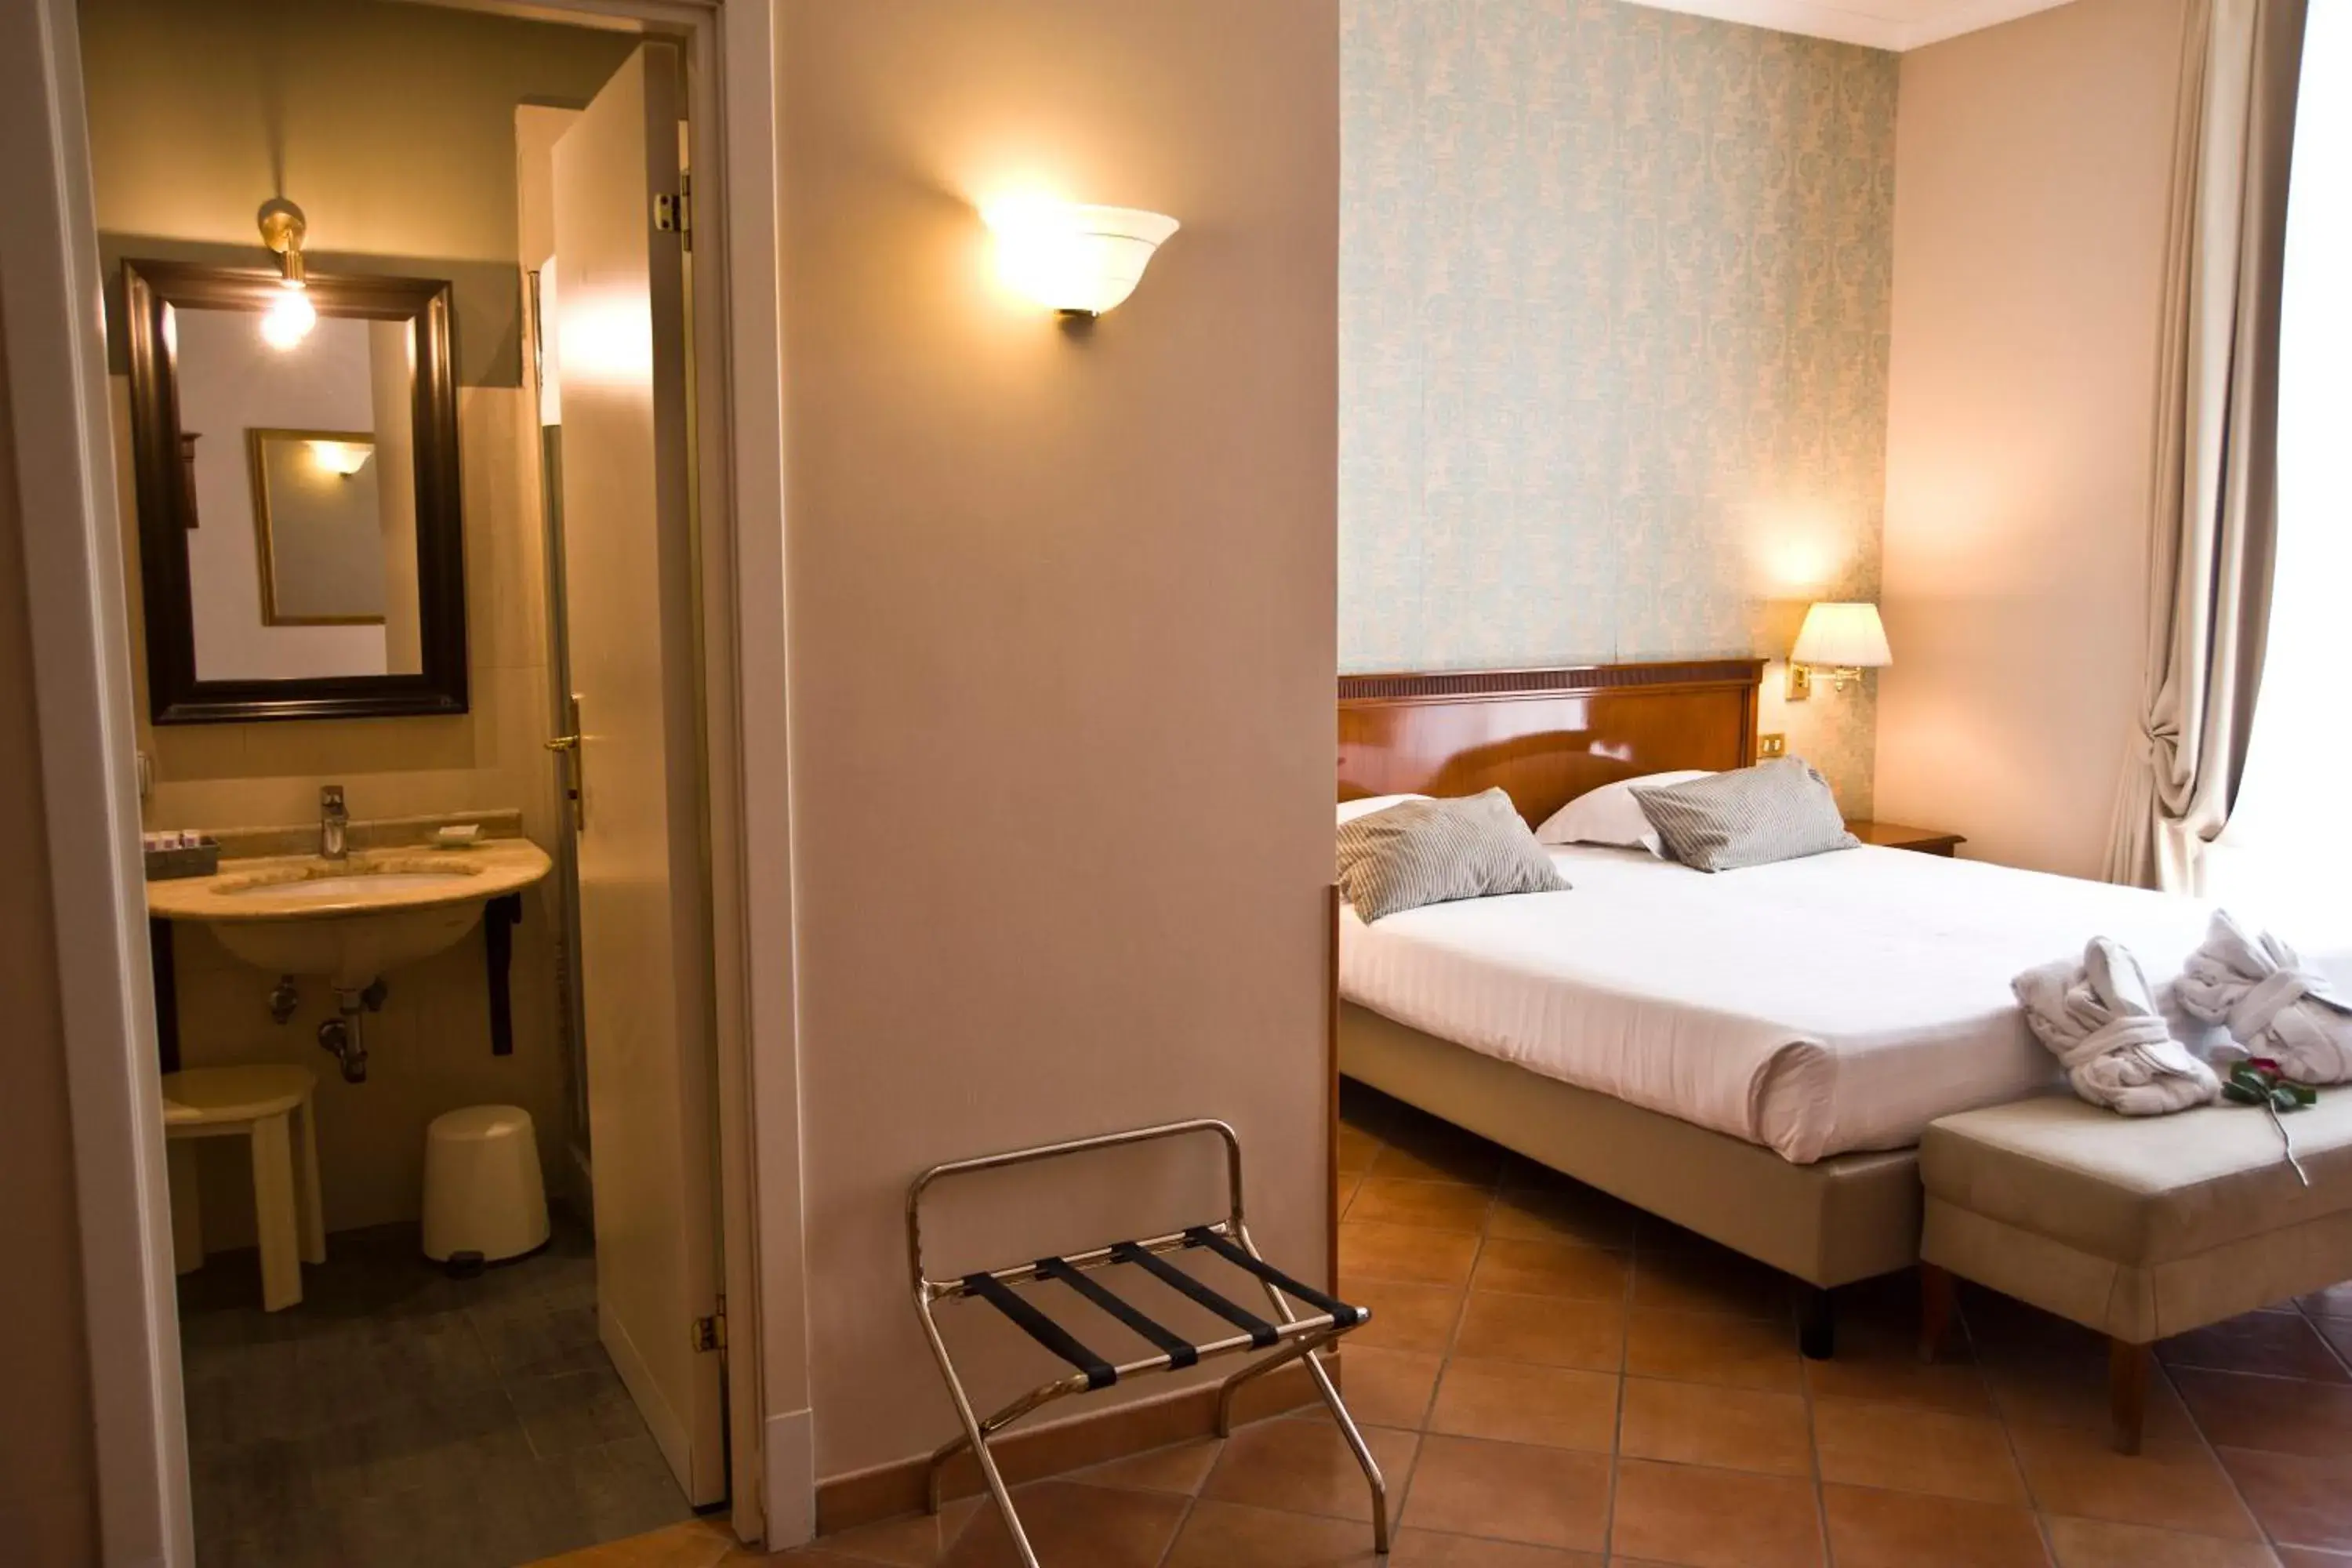 Bedroom, Bathroom in Hotel Nuvò